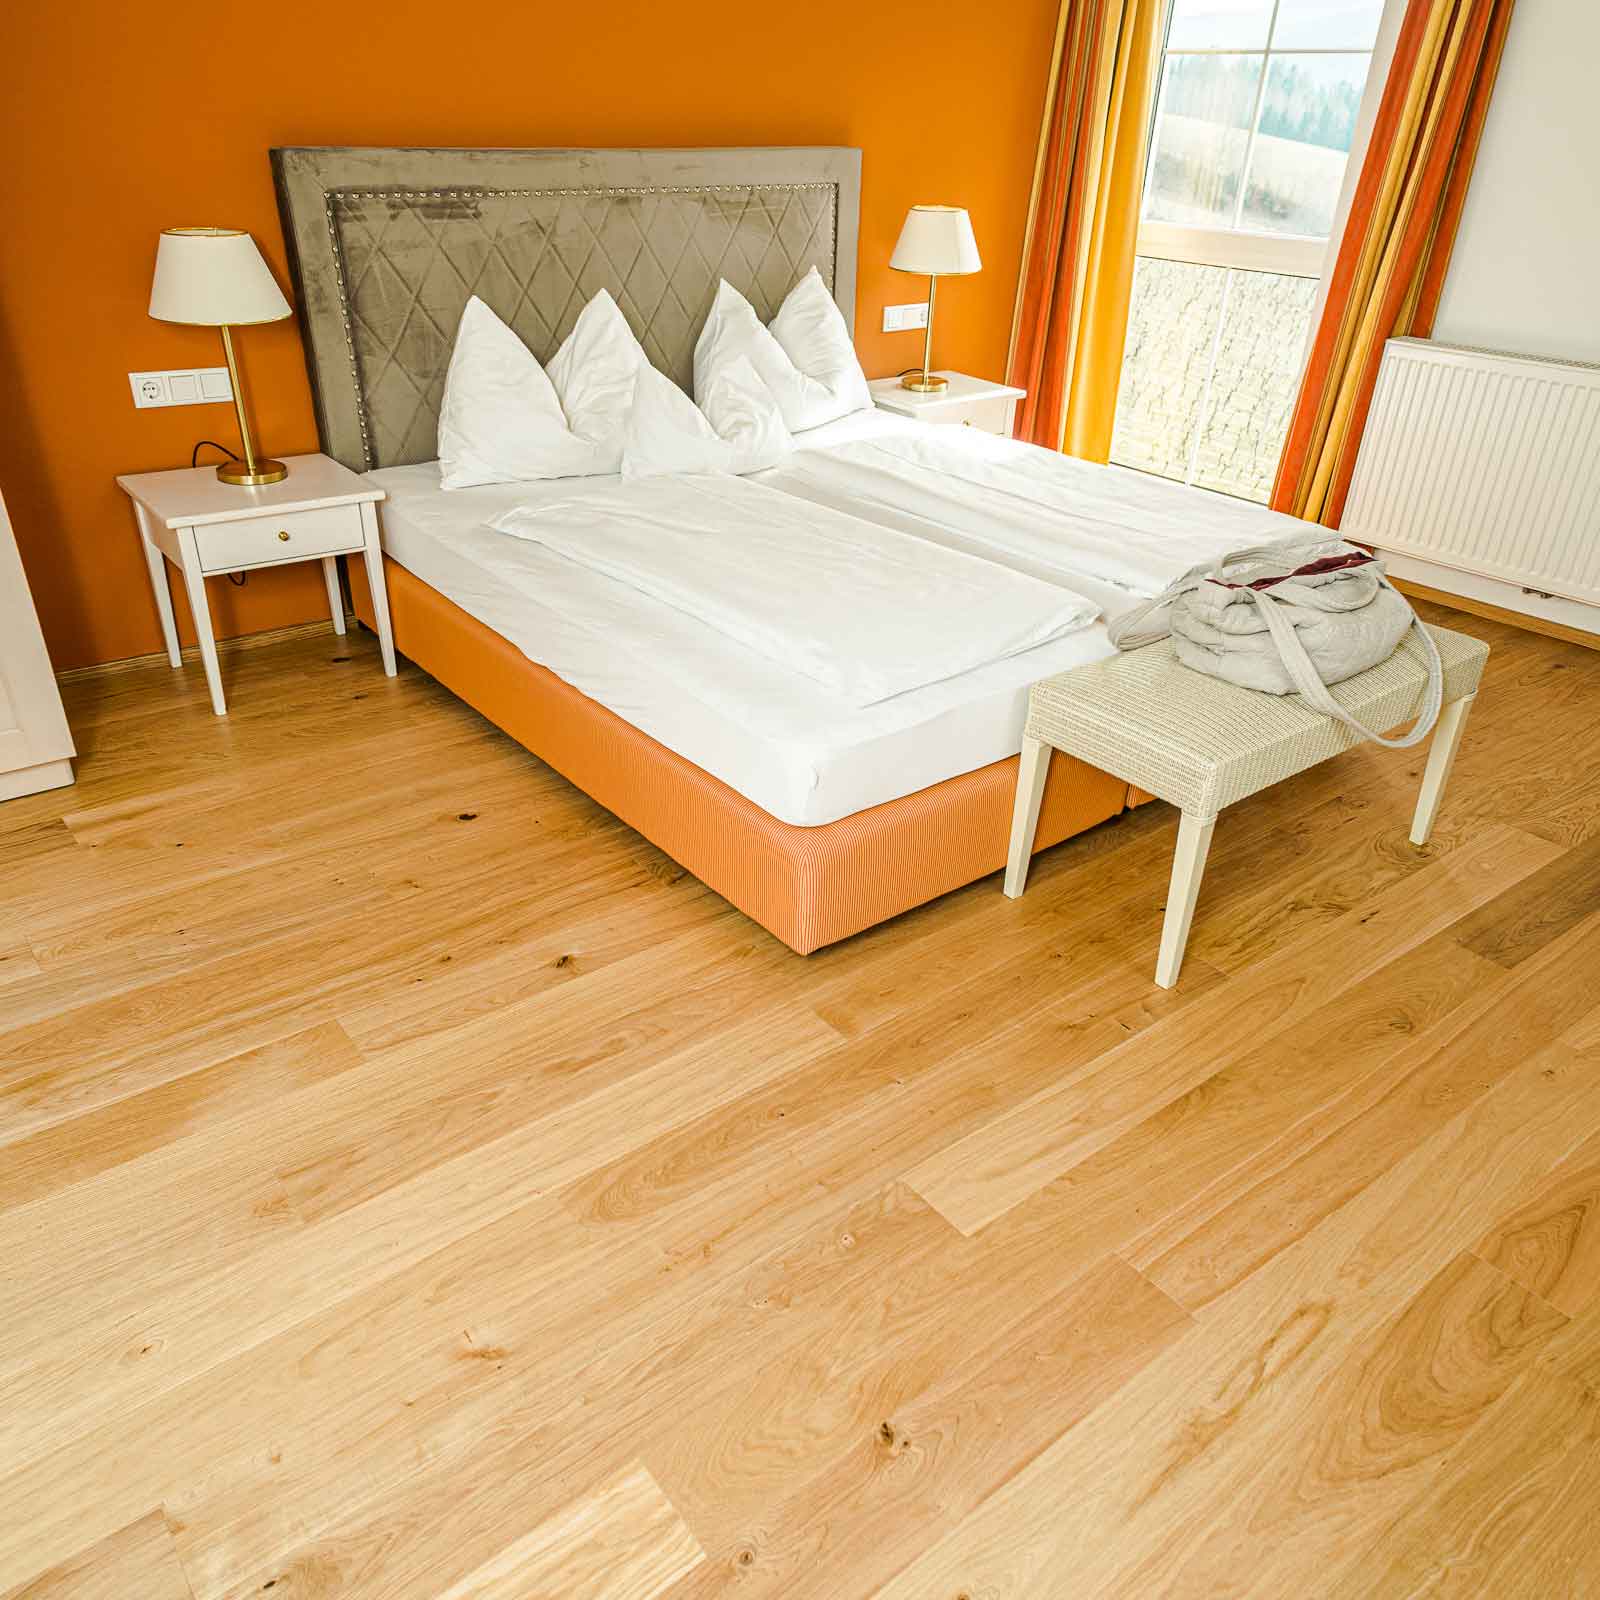 Bild zeigt neu verlegten Holzboden im Zimmer des Gut Moserhof in der Steiermark.